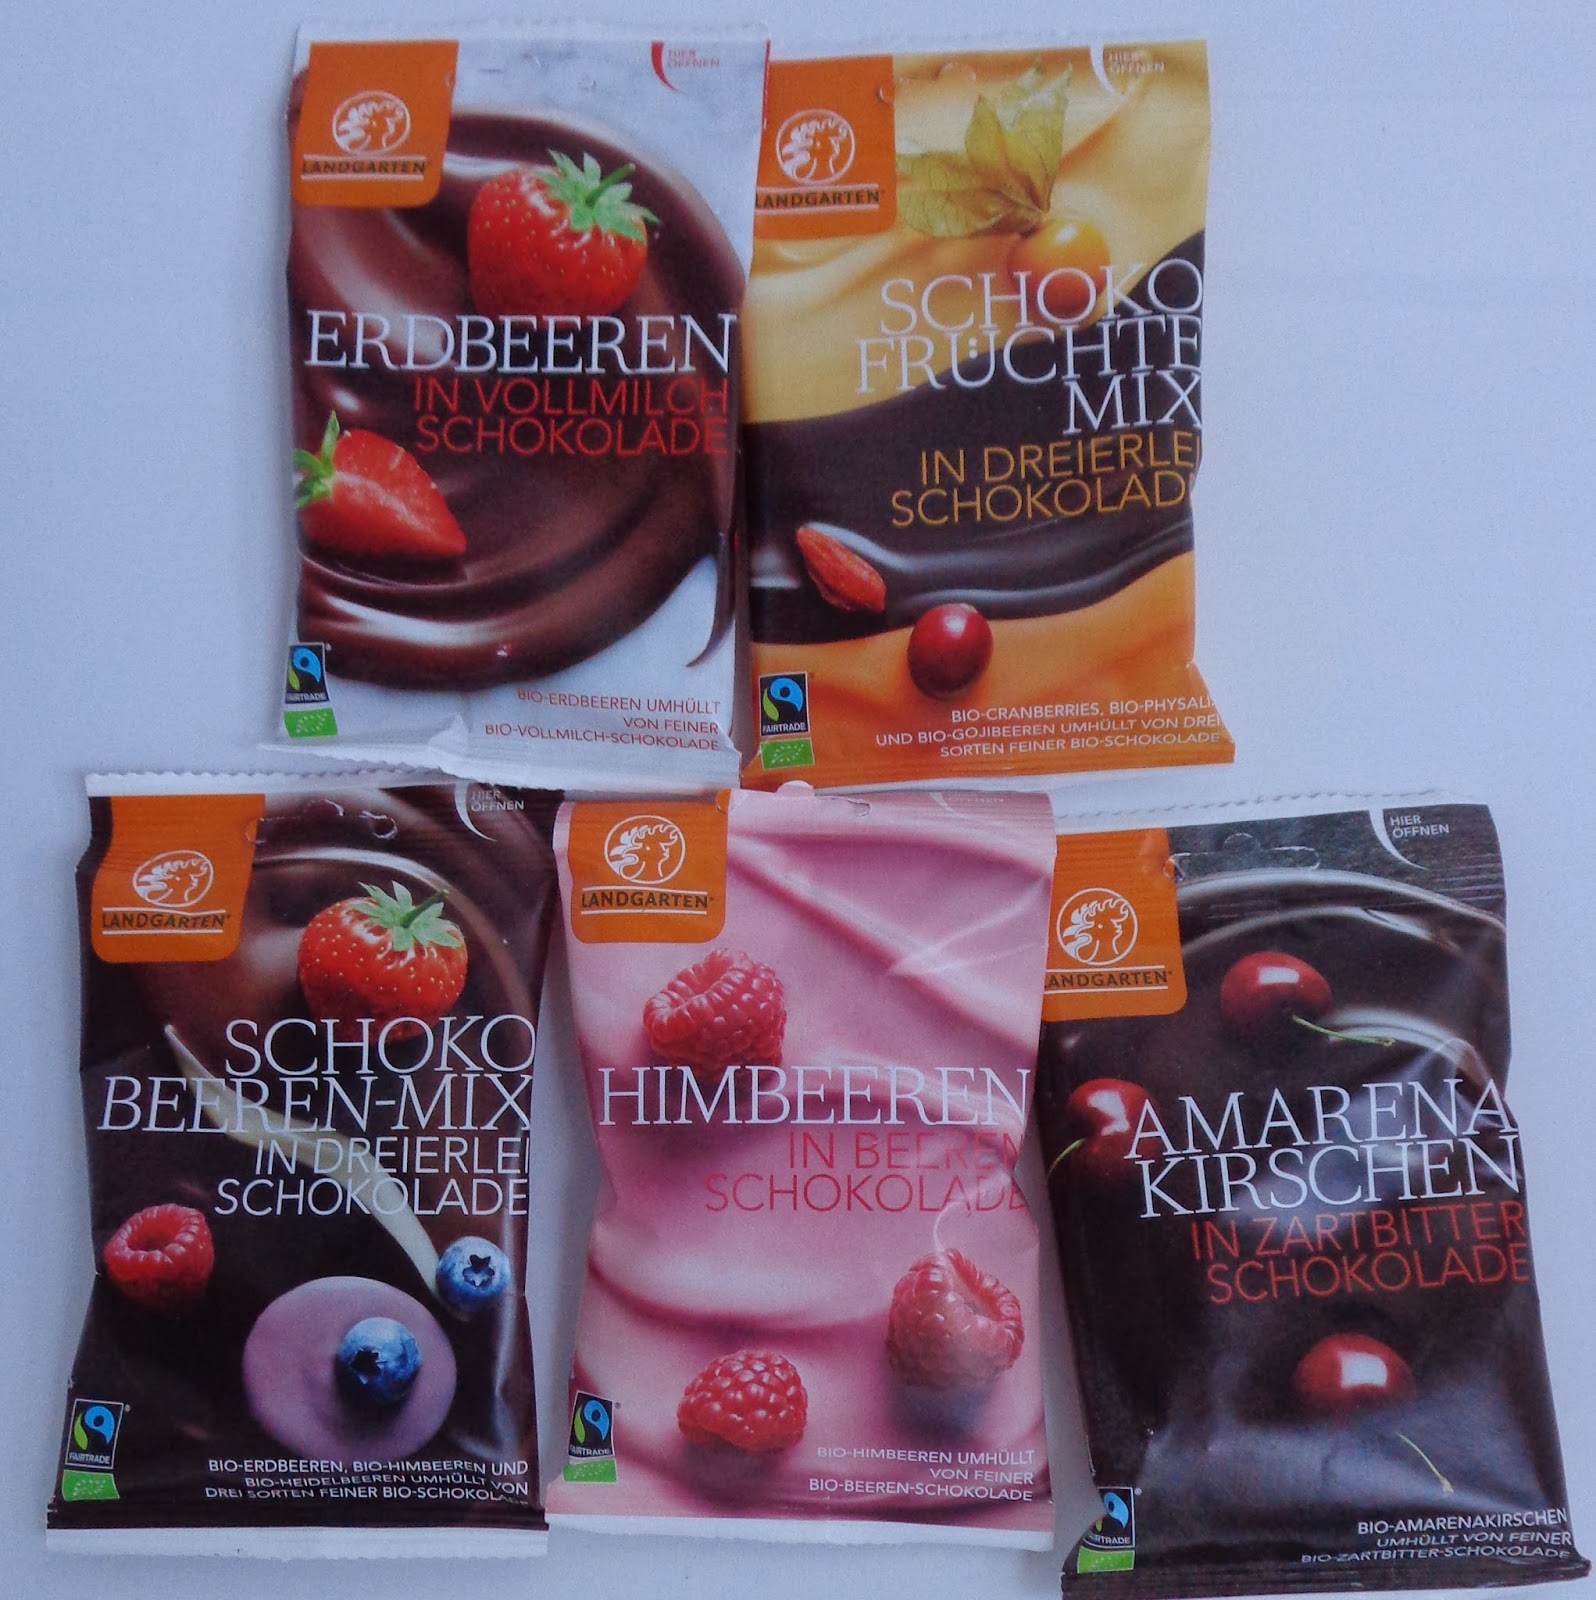 Amarena-Kirschen in Zartbitterschokolade; Erdbeeren in Vollmilchschokolade, Himbeeren in Beerenschokolade; Schoko-Früchte-Mix, Schoko Beeren-Mix